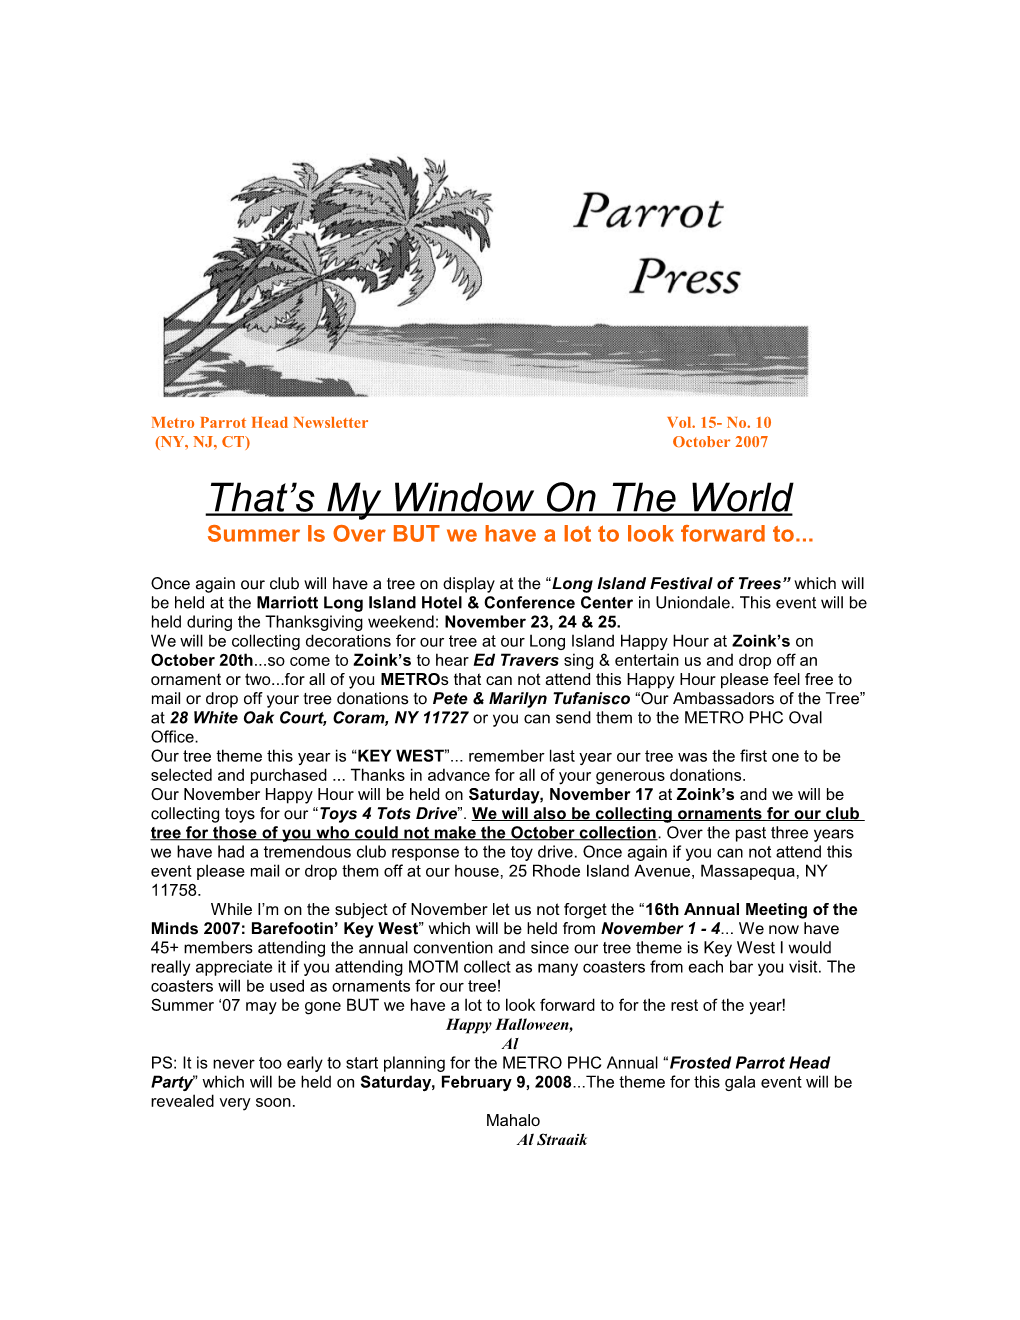 Metro Parrot Head Newsletter Vol. 15- No. 10